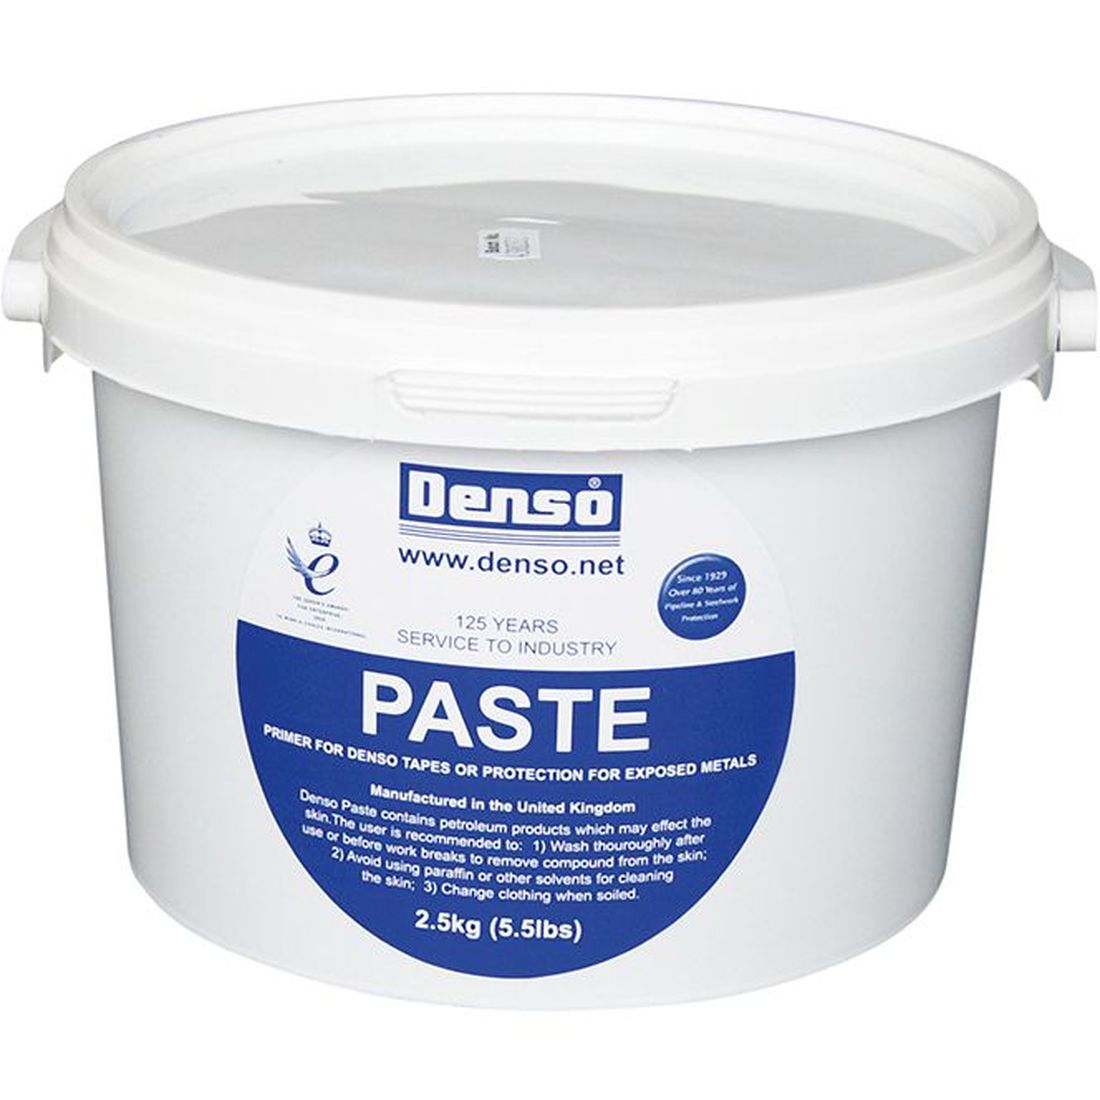 Denso Denso Paste 2.5kg Tub             